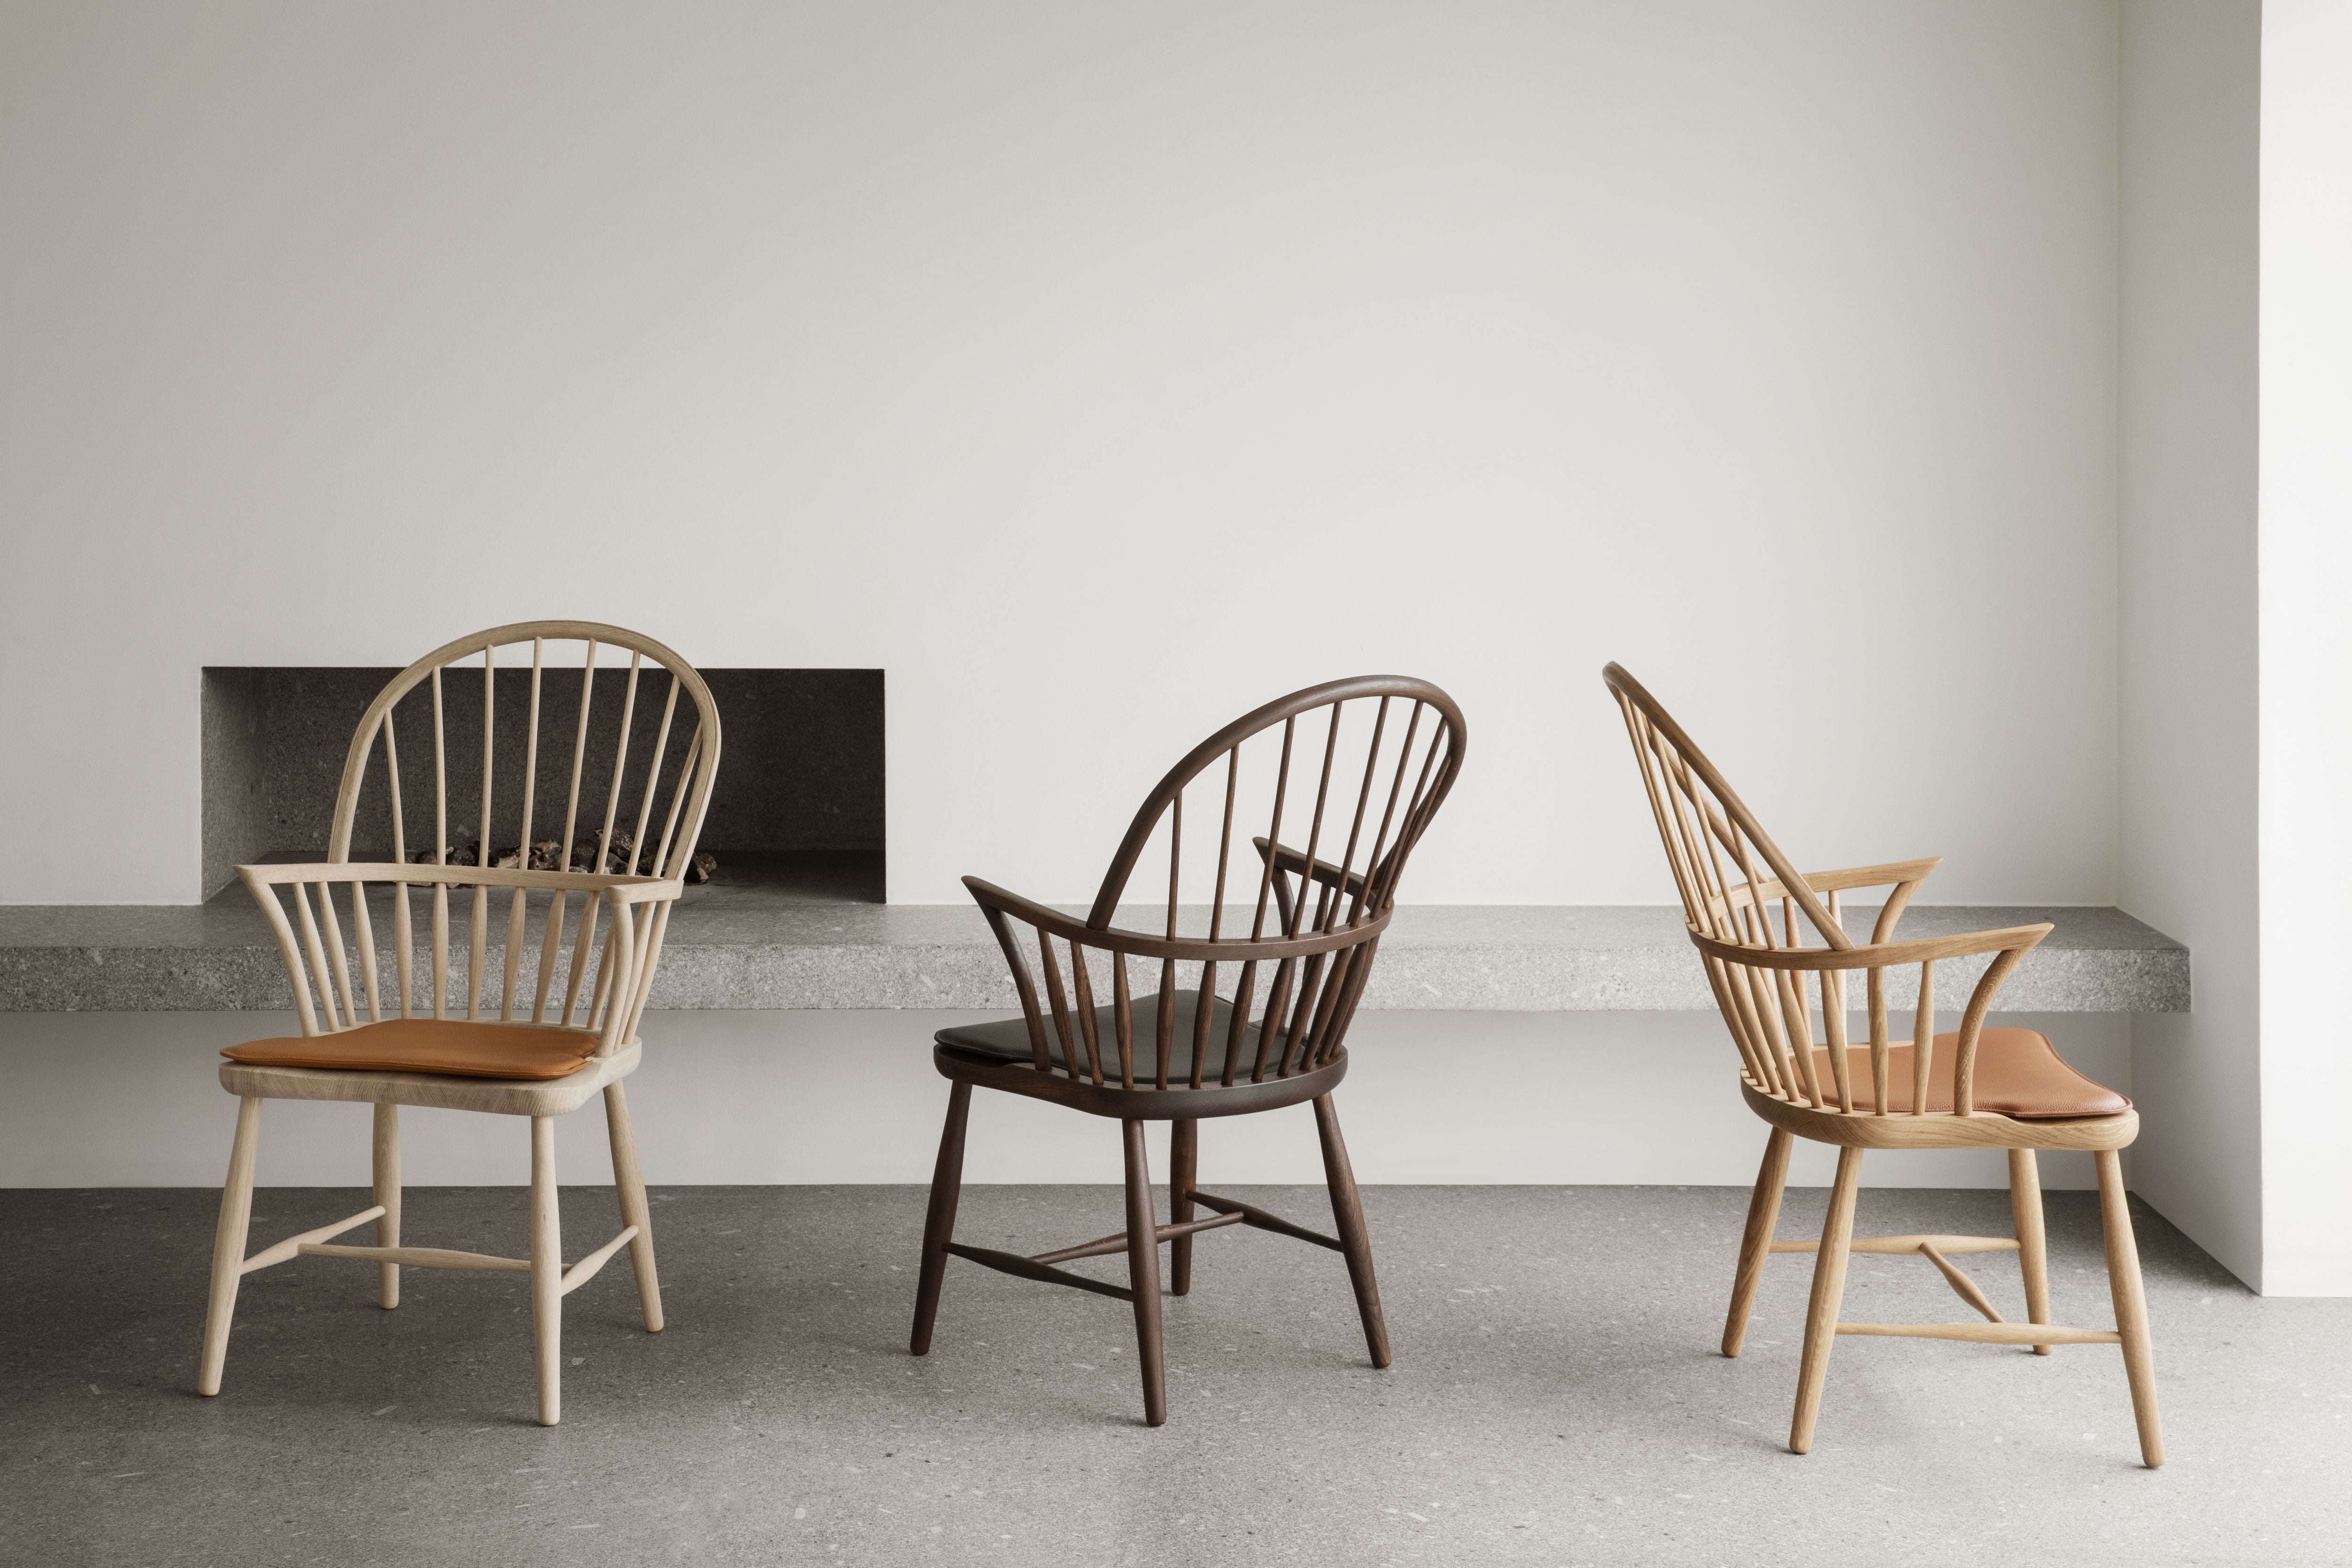 Carl Hansen Cushion For Windsor Chair, Leather Loke 7050